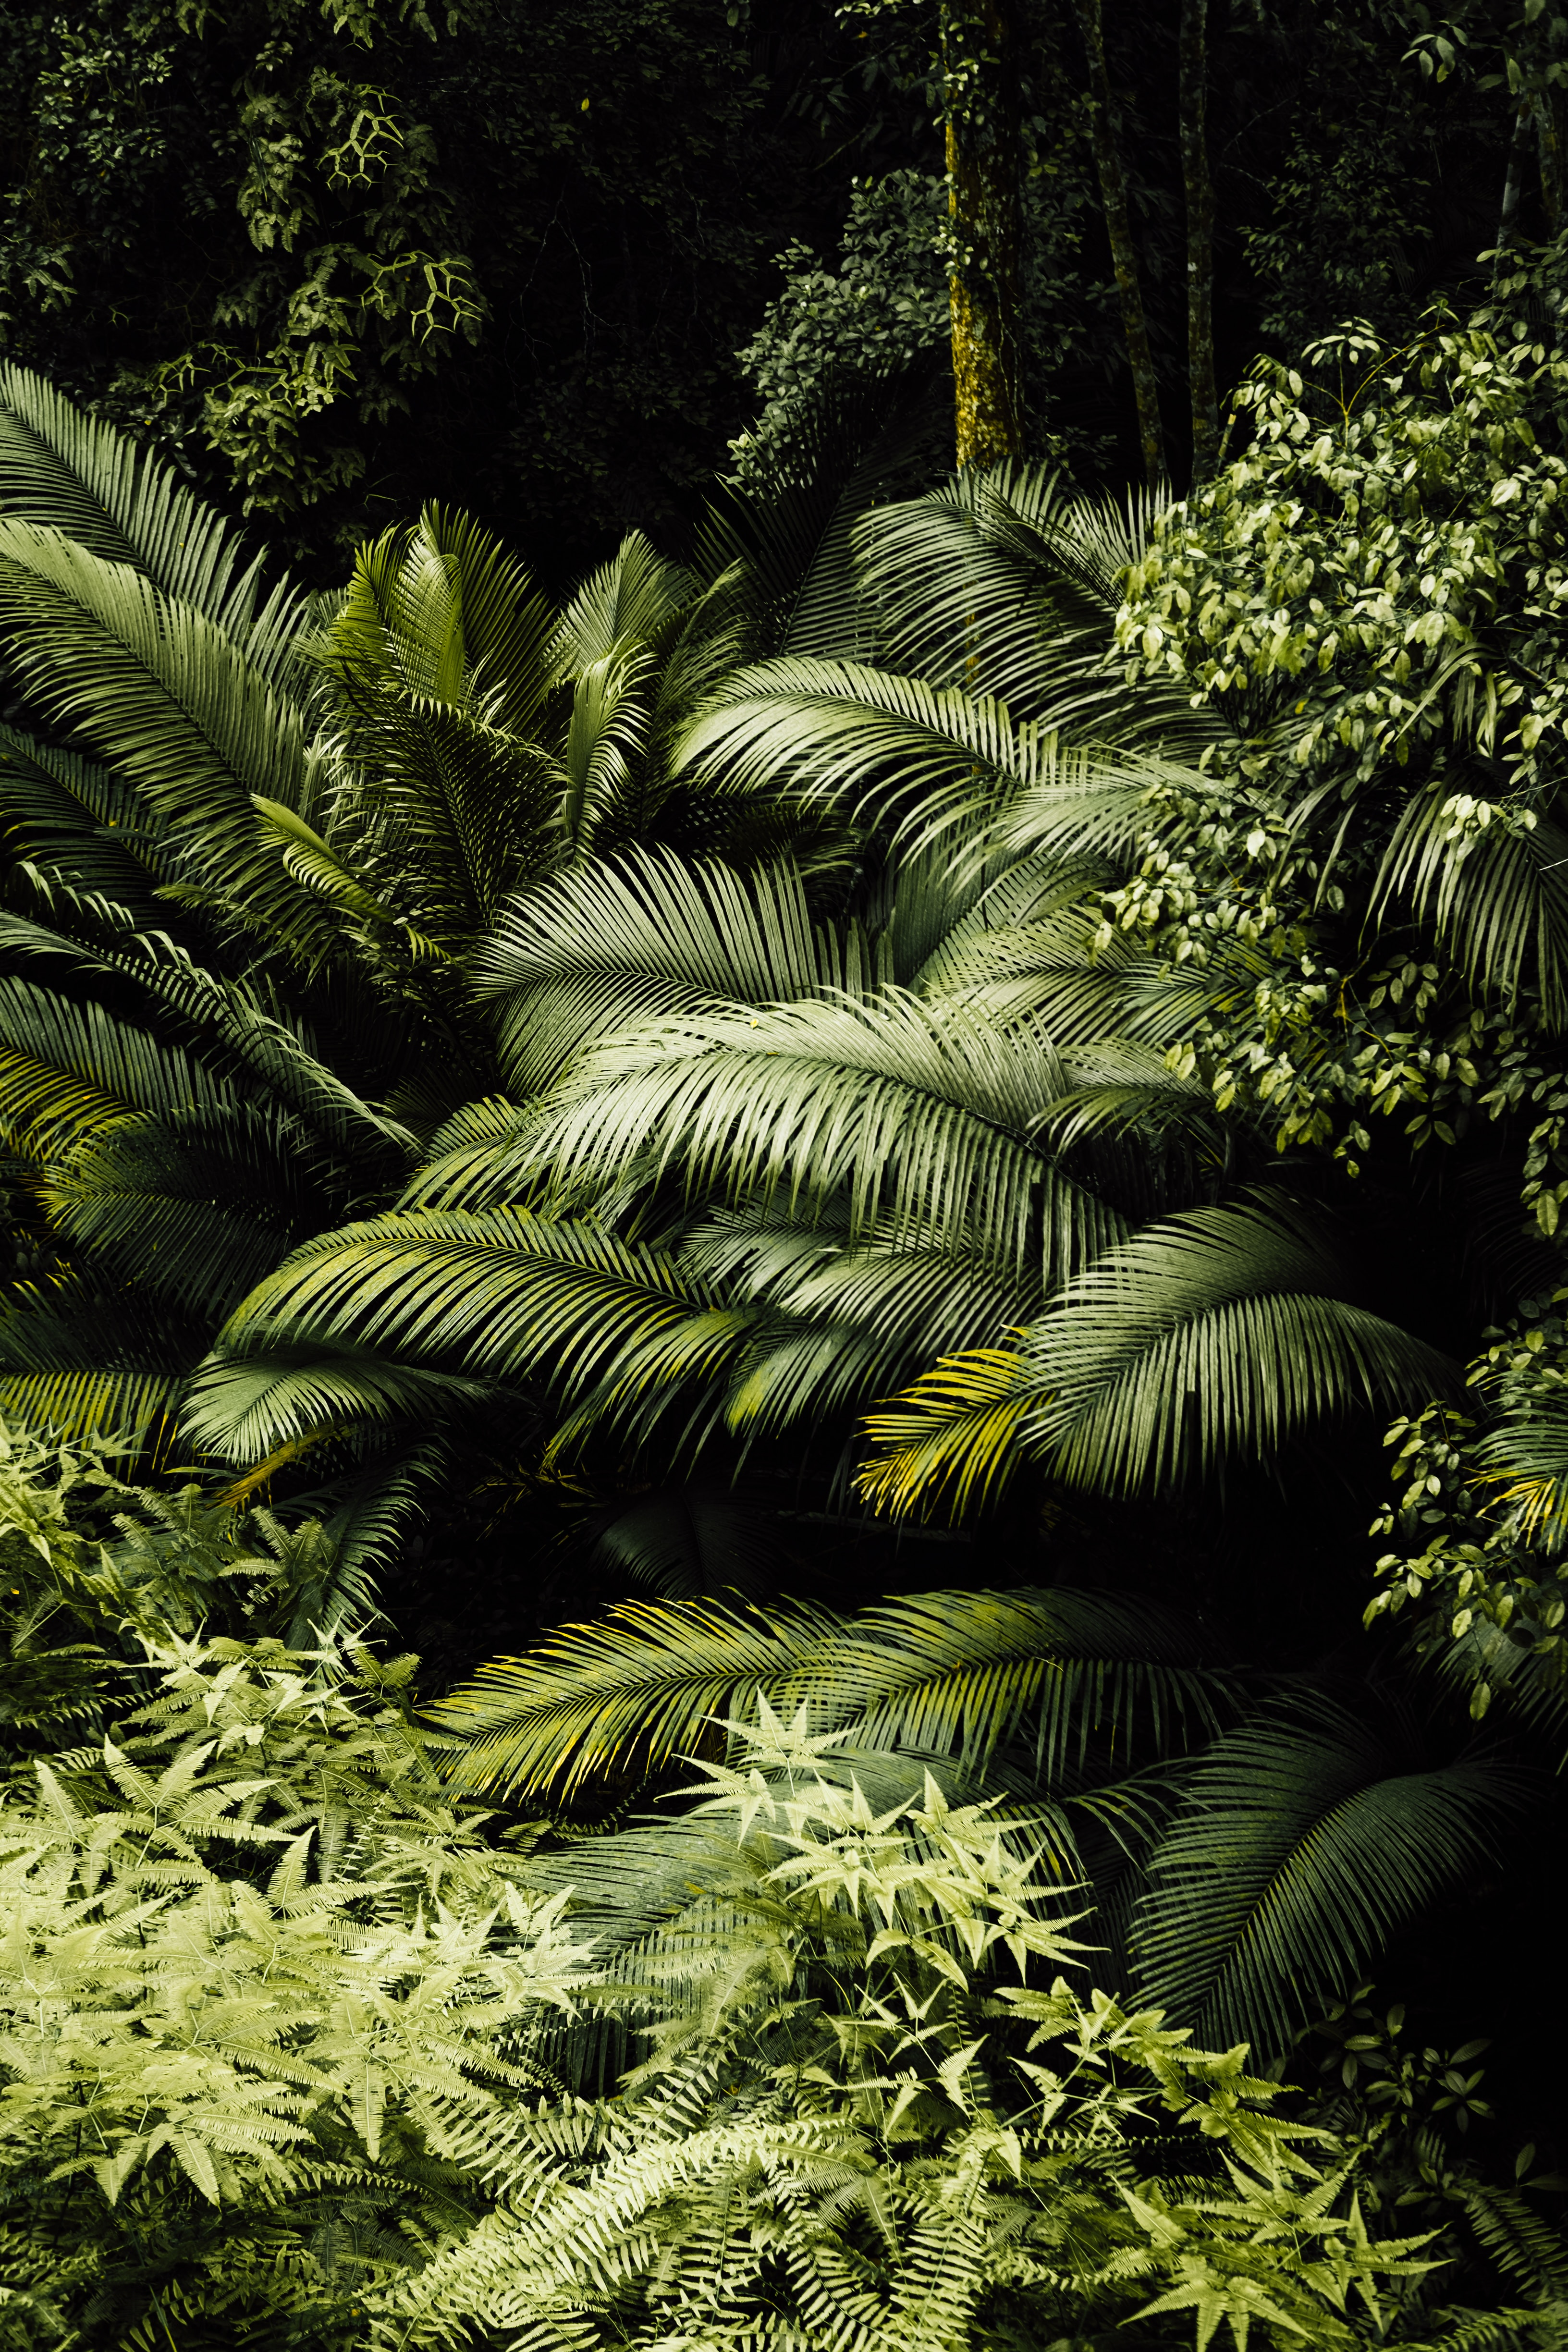 Ferns in the jungle